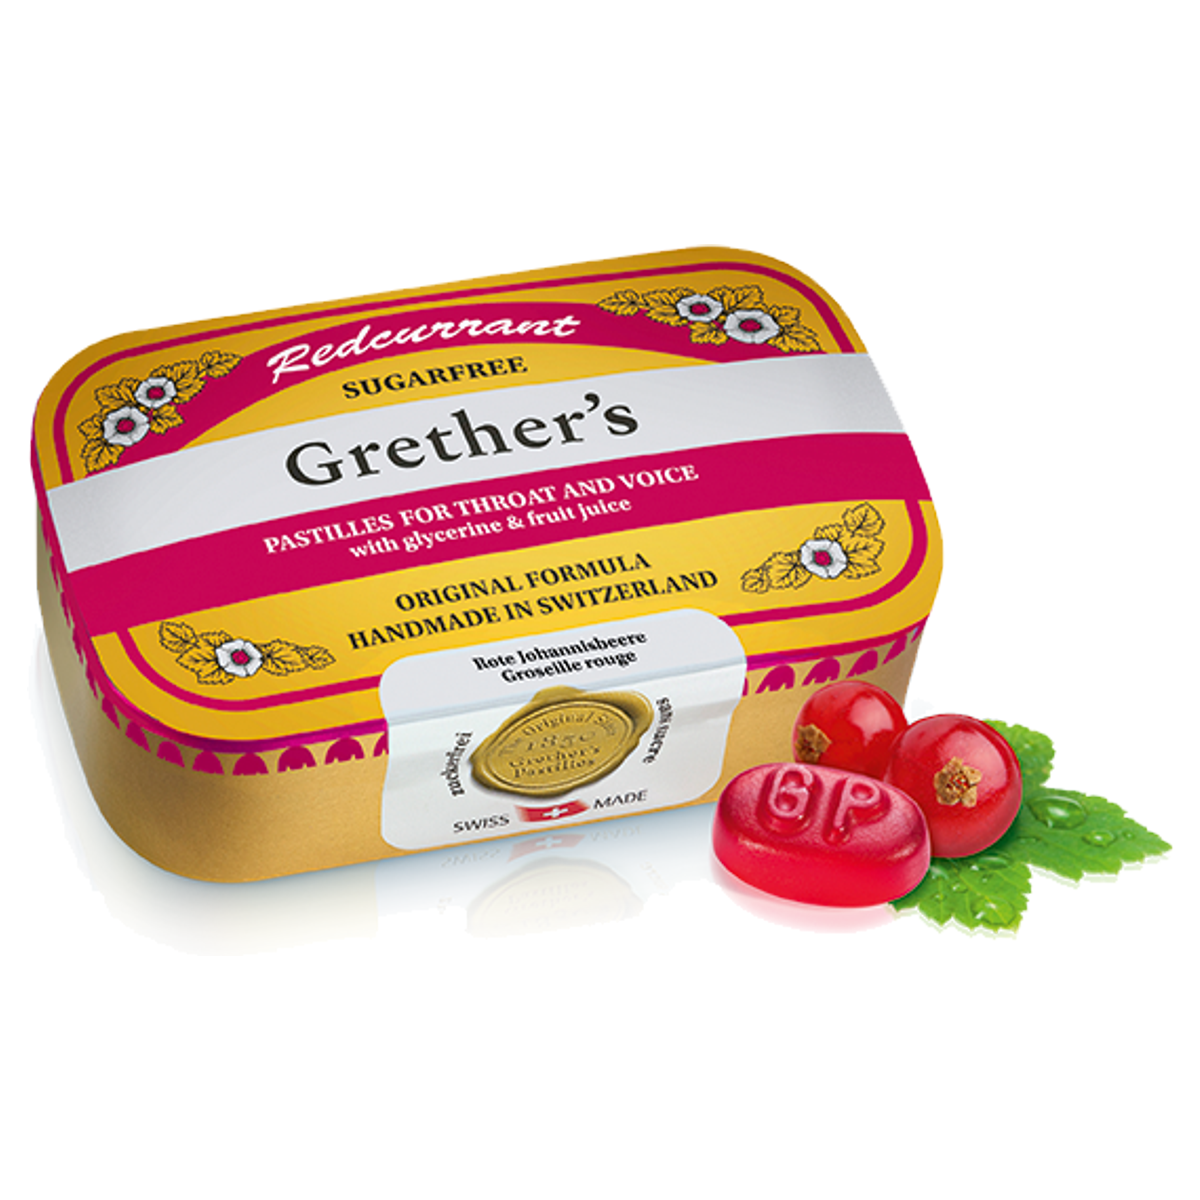 Grethers Redcurrant Vitamin C Pastillen ohne Zucker Dose 110 g